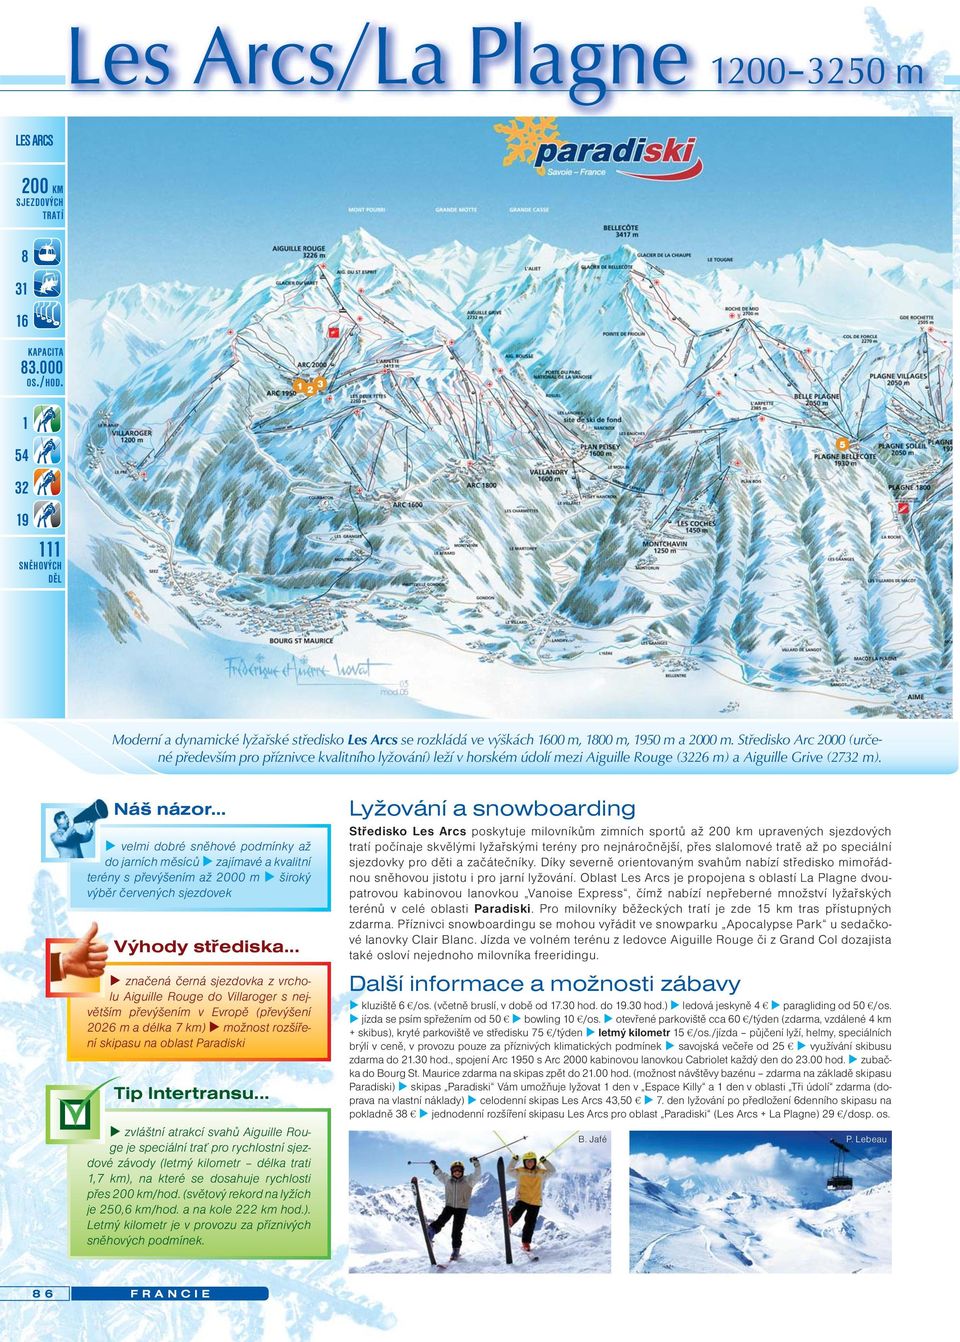 Středisko Arc 2000 (určené především pro příznivce kvalitního lyžování) leží v horském údolí mezi Aiguille Rouge (3226 m) a Aiguille Grive (2732 m). Náš názor.